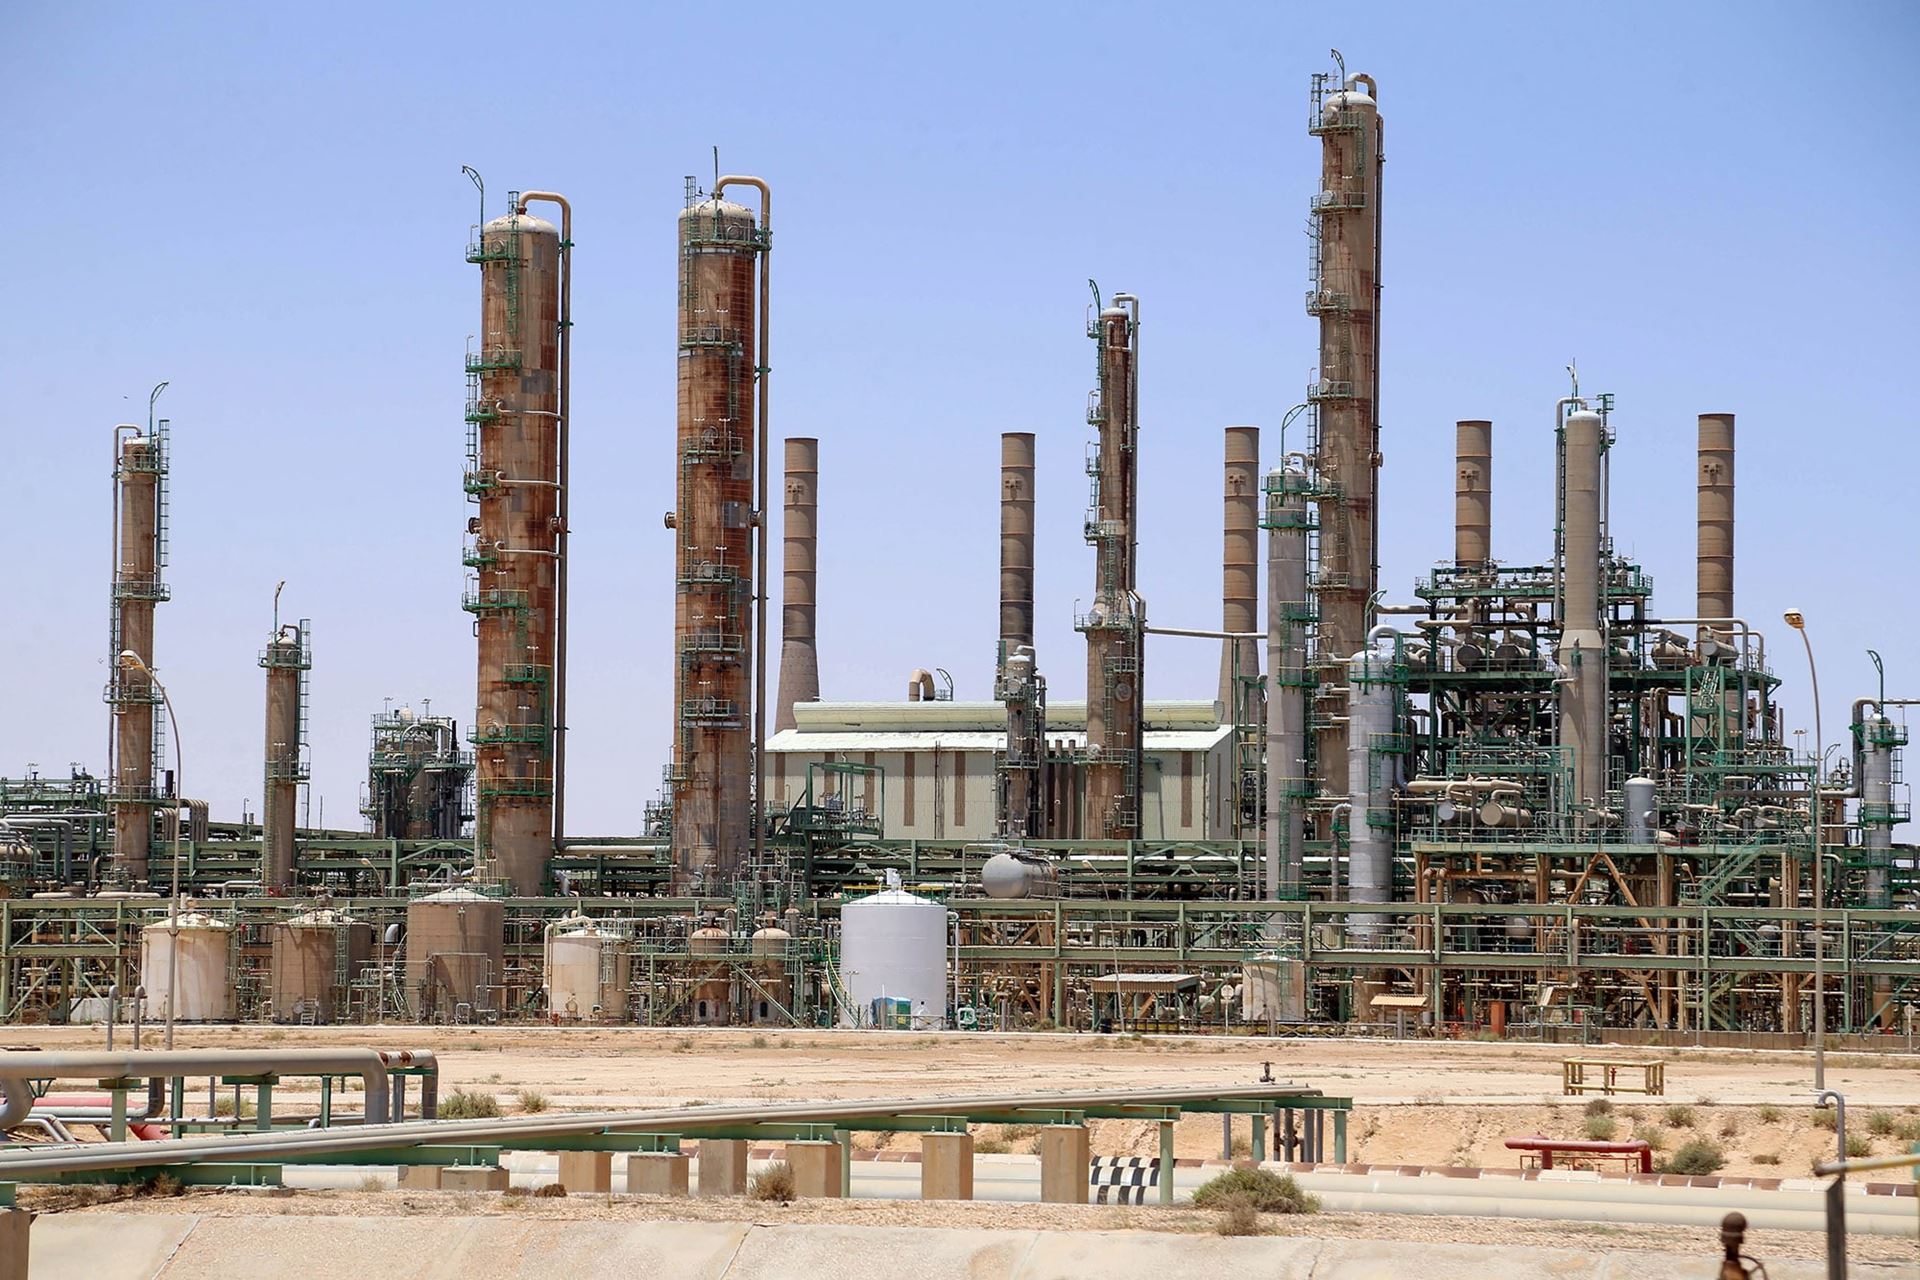 El Sharara field in Libya has resumed operations